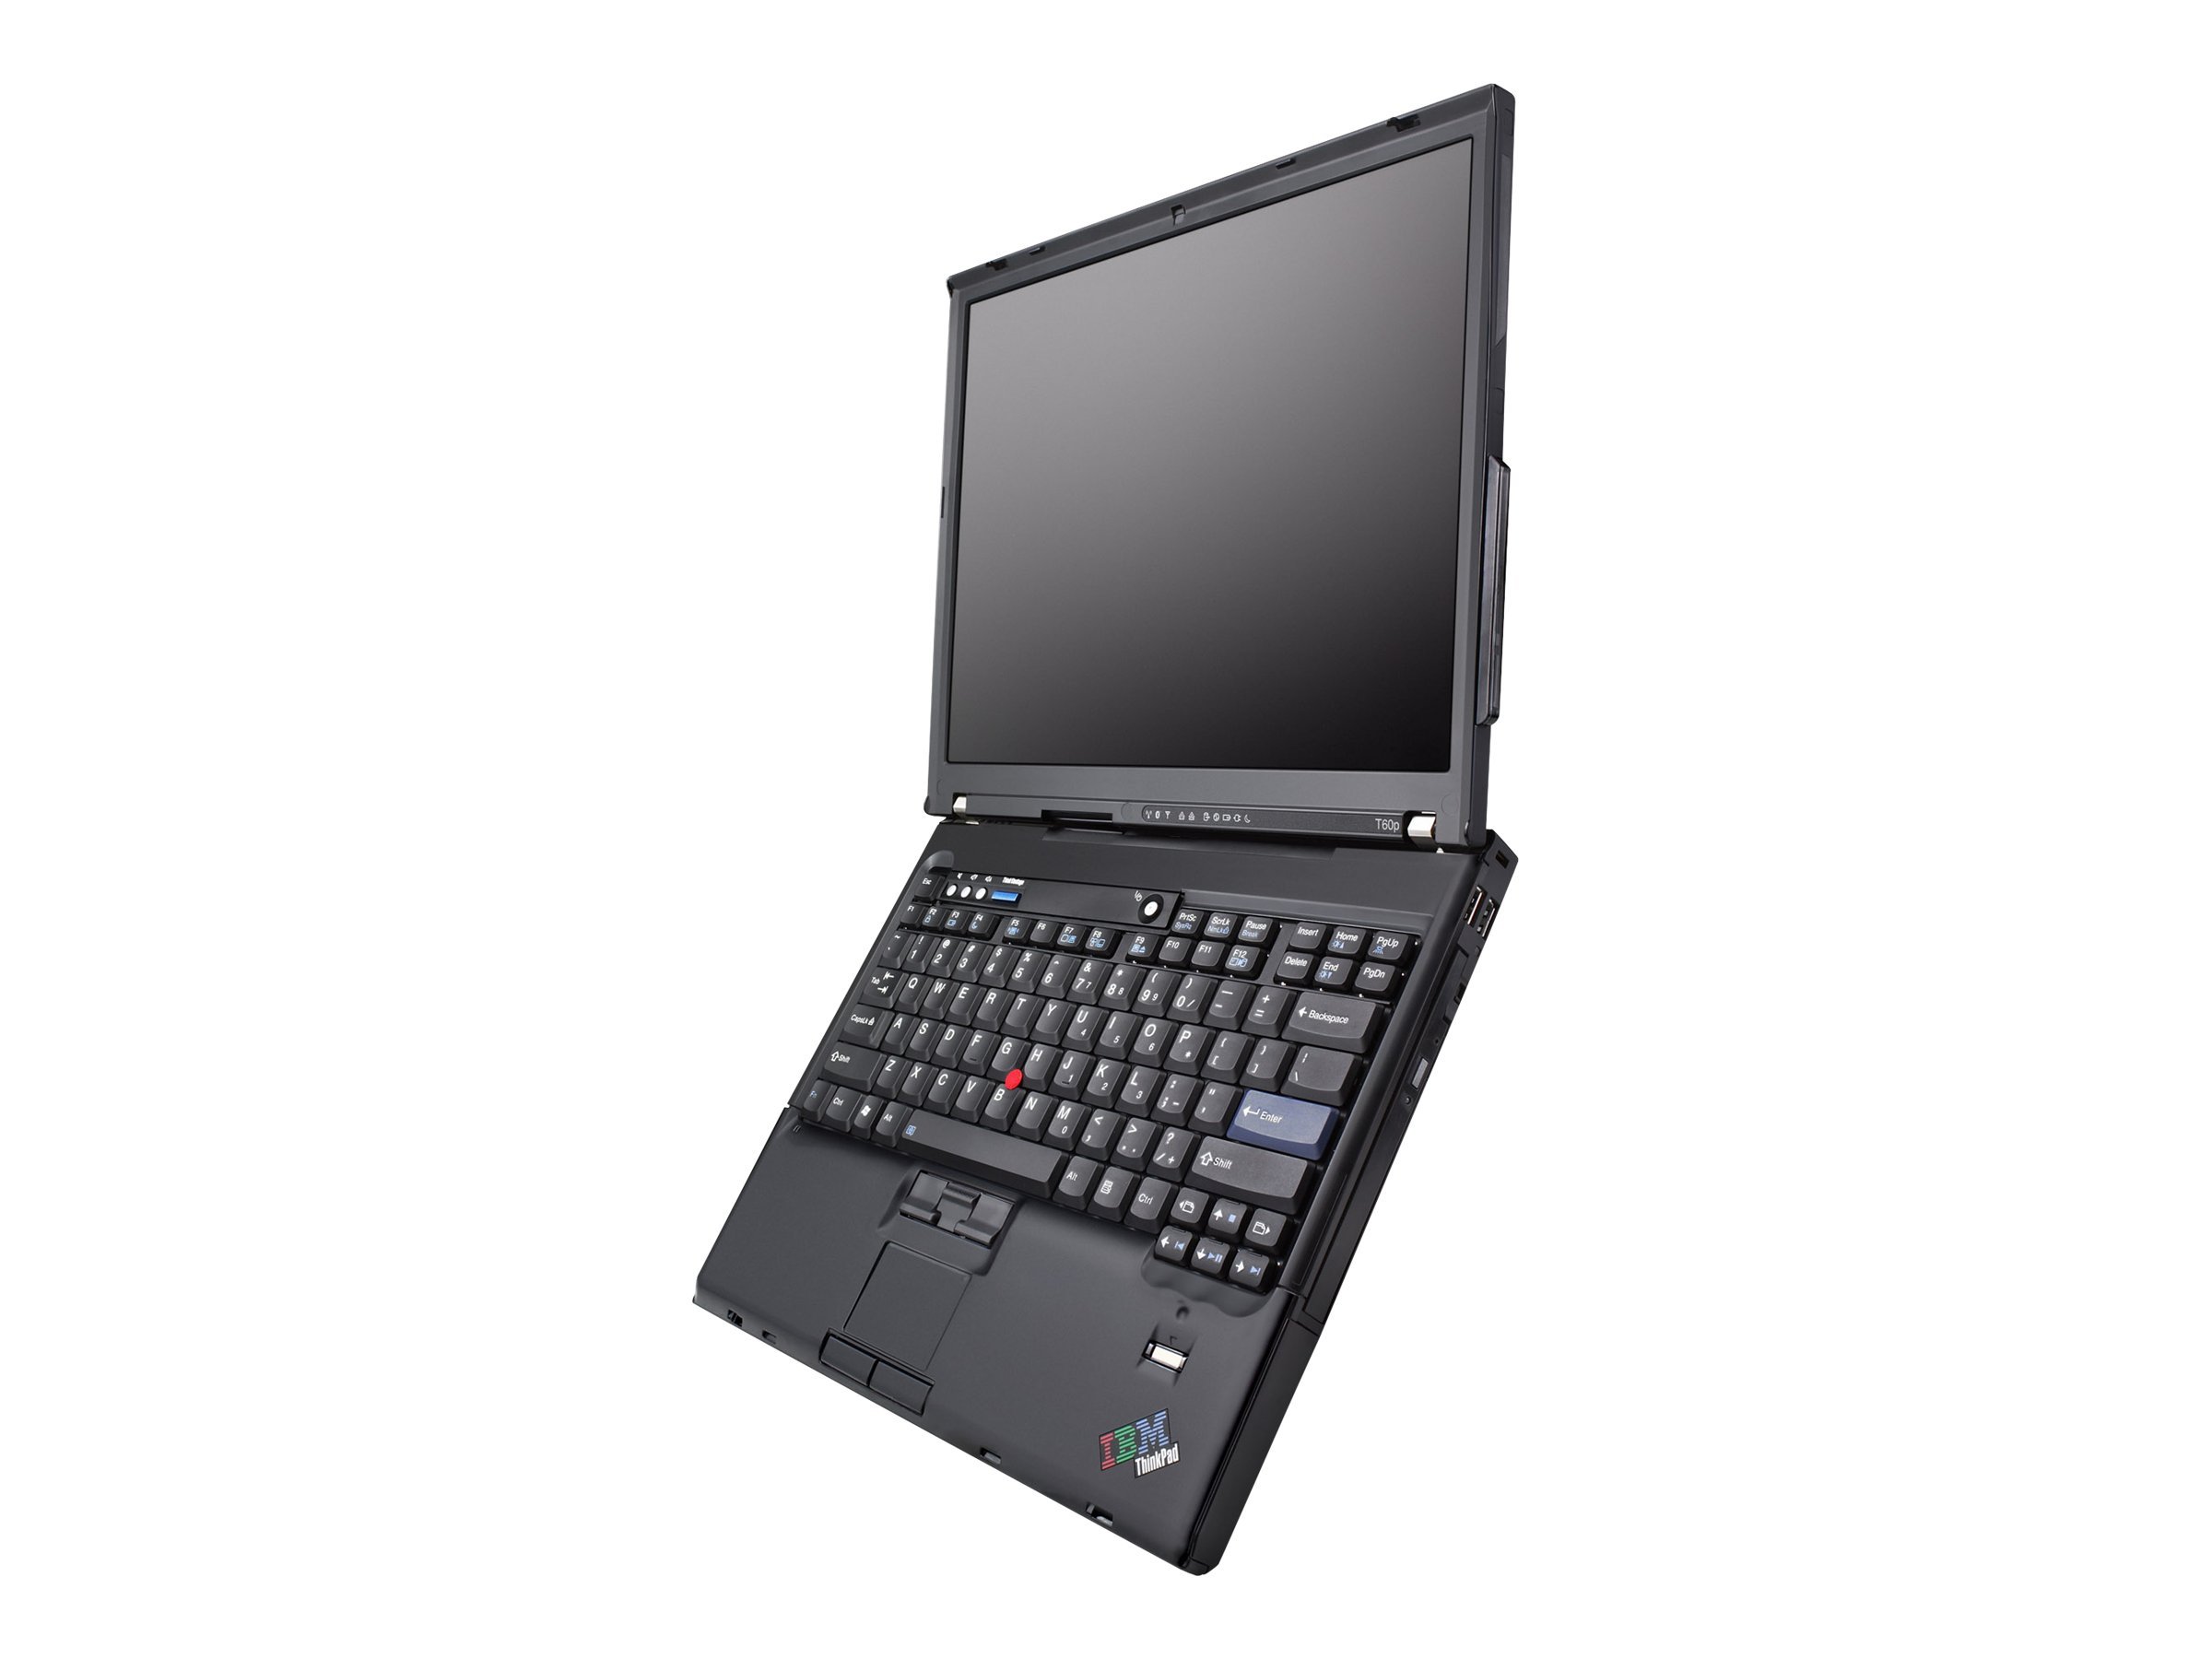 Lenovo ThinkPad T60p (2008)